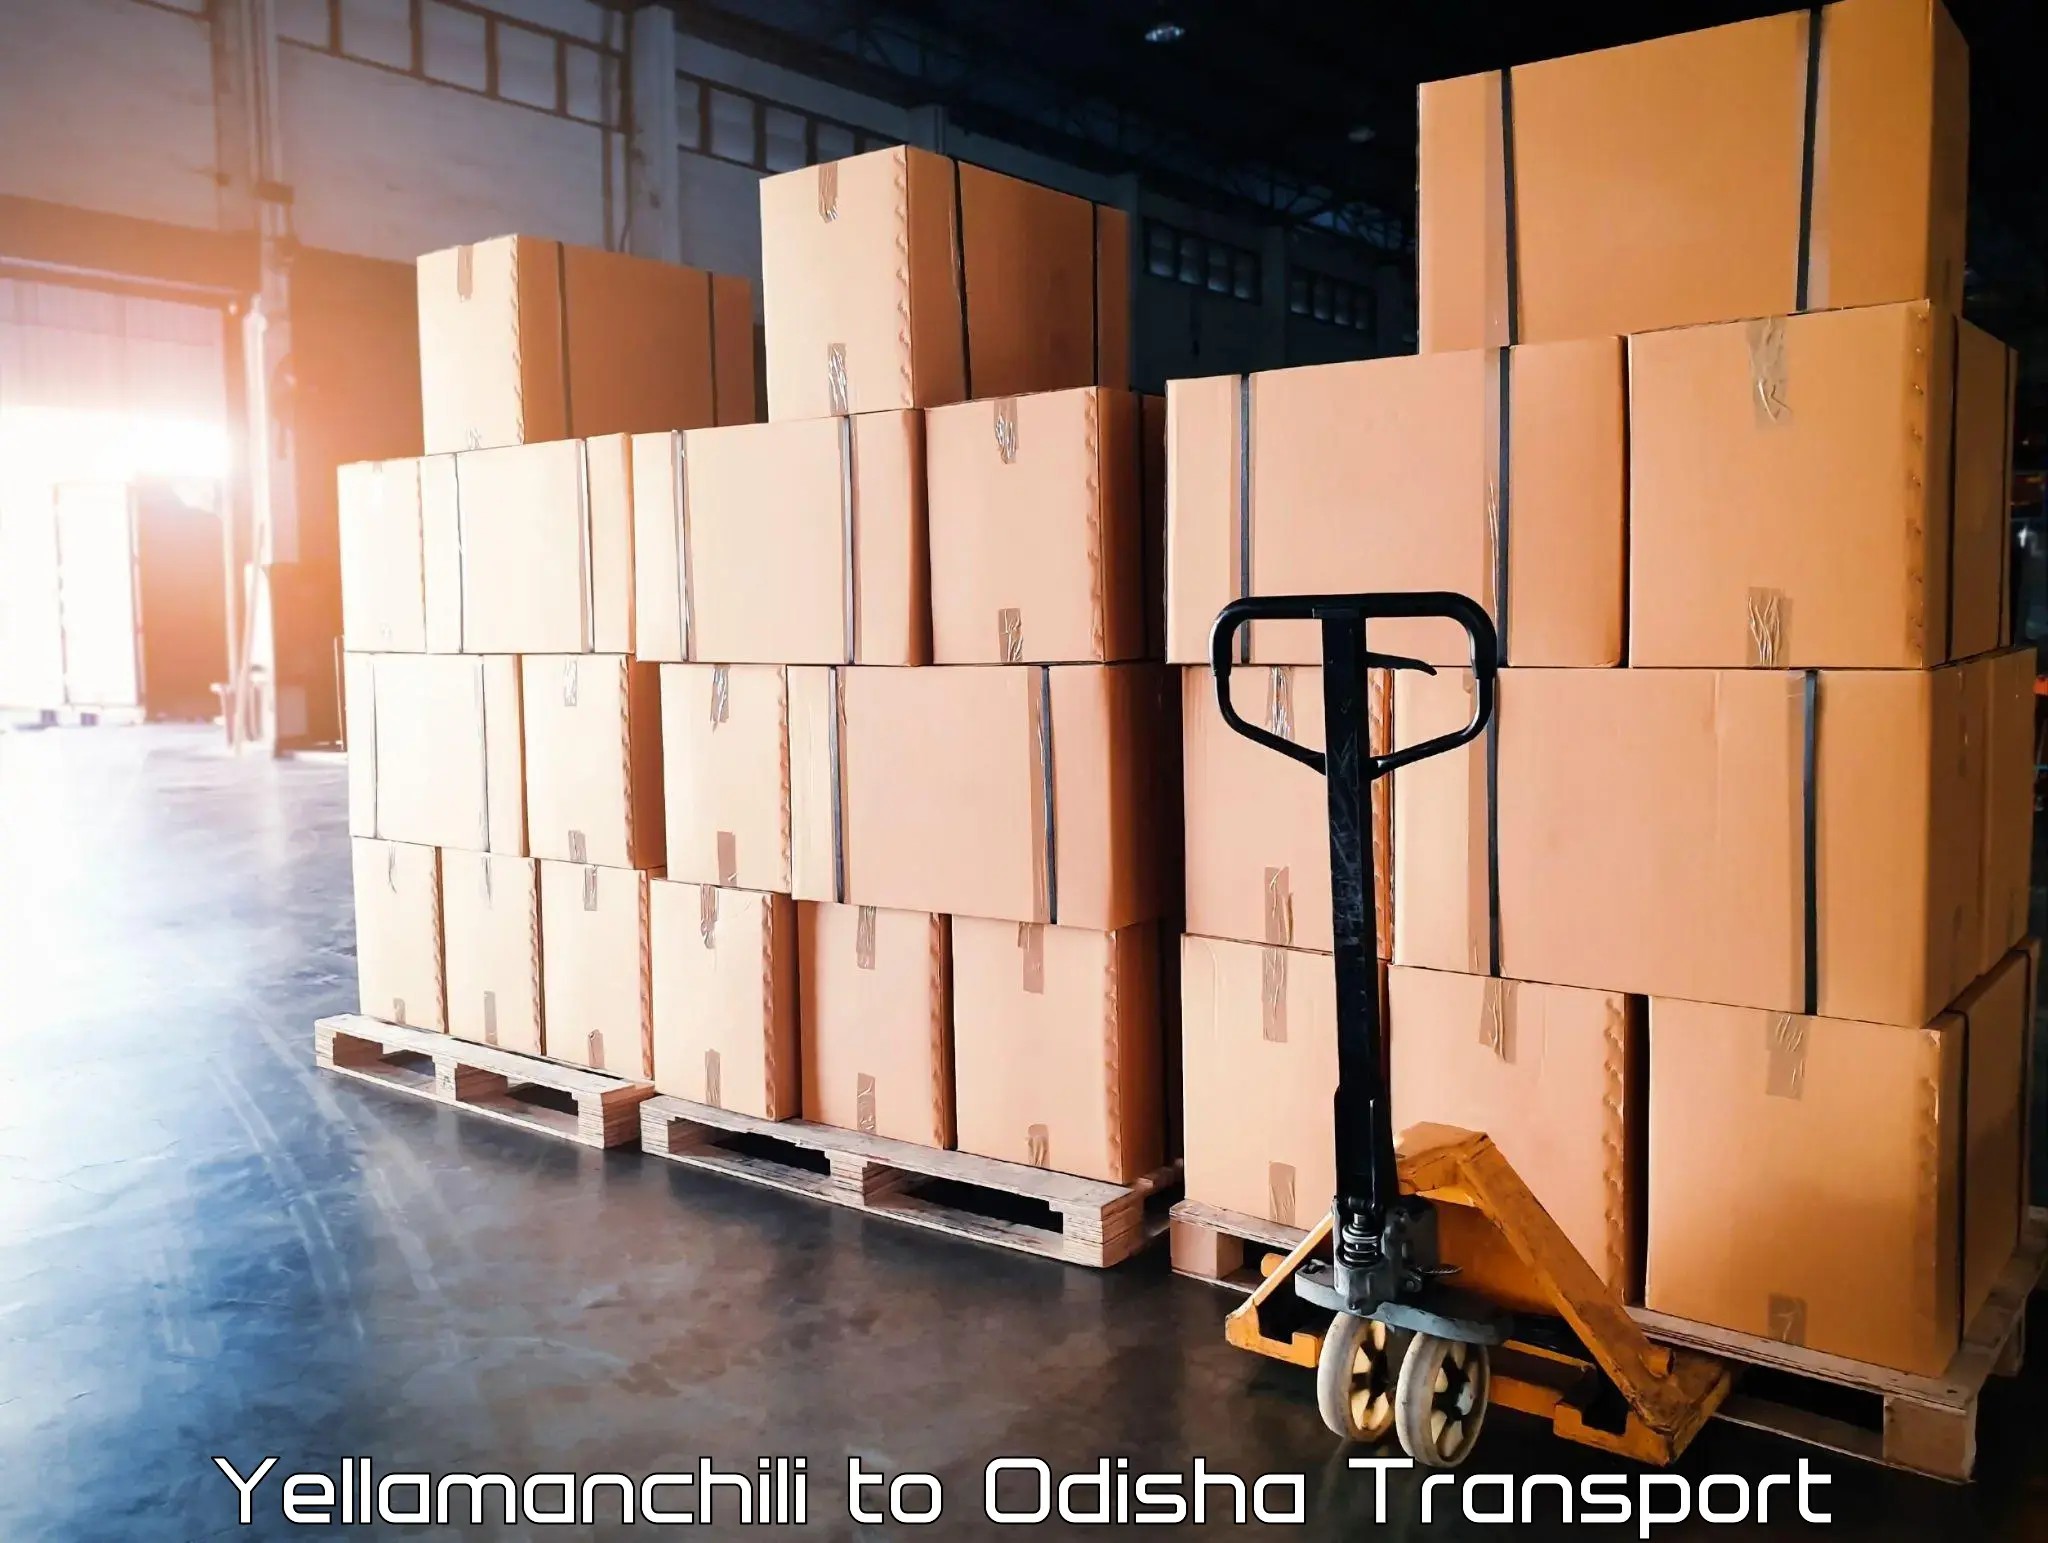 Truck transport companies in India Yellamanchili to Chikiti